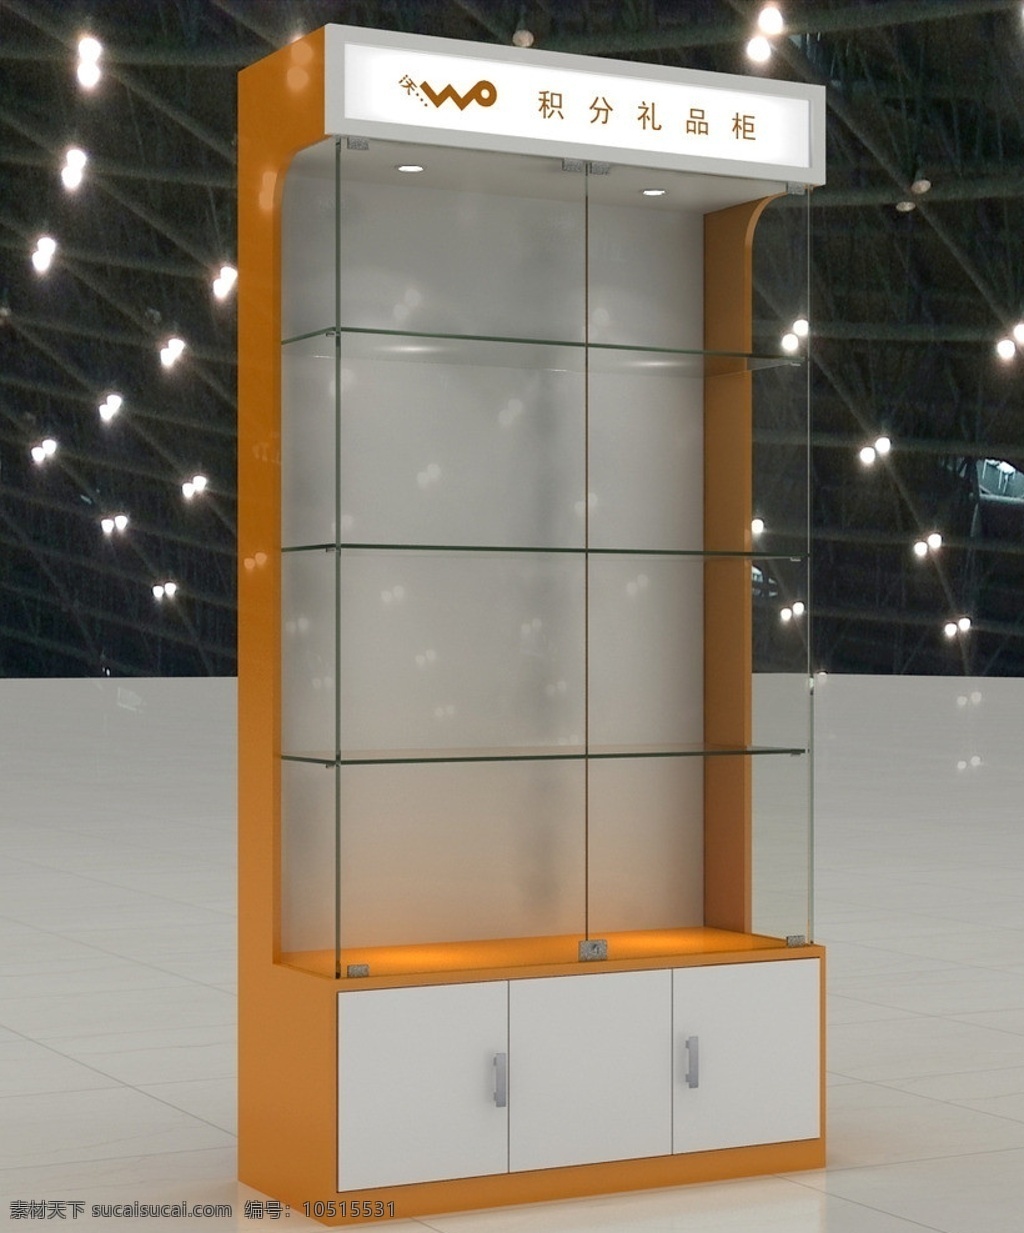 联通礼品柜 联通 沃 3g 礼品 礼品柜 玻璃柜 3d模型 展示模型 3d设计模型 源文件 max